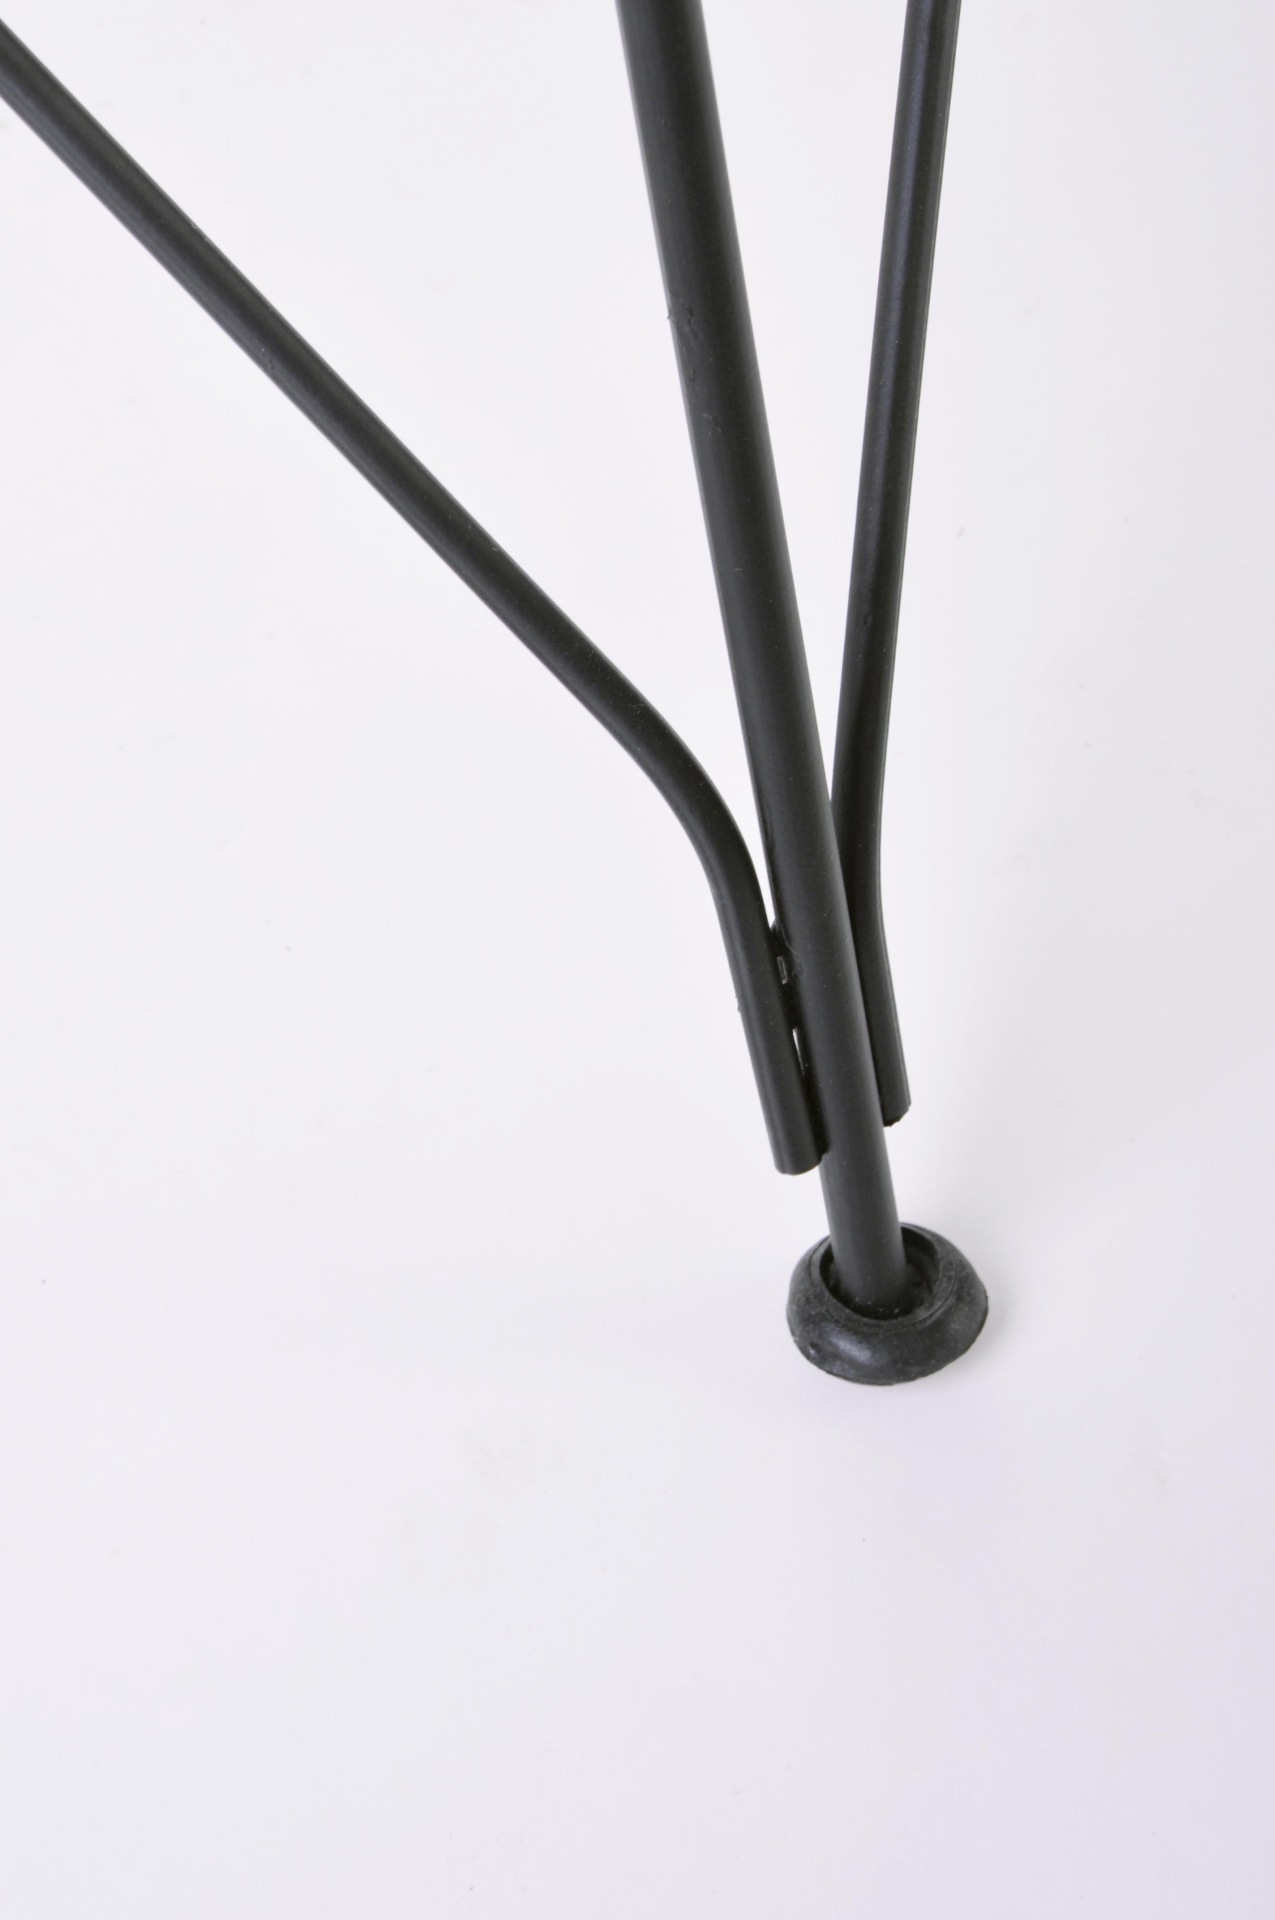 Der Stuhl Lucila Kabu überzeugt mit seinem modernem Design.Gefertigt wurde der Stuhl aus einem Kabugeflecht, welches einen schwarzen Farbton besitzt. Das Gestell ist aus Metall und hat eine Schwarze Farbe. Die Sitzhöhe beträgt 45 cm.